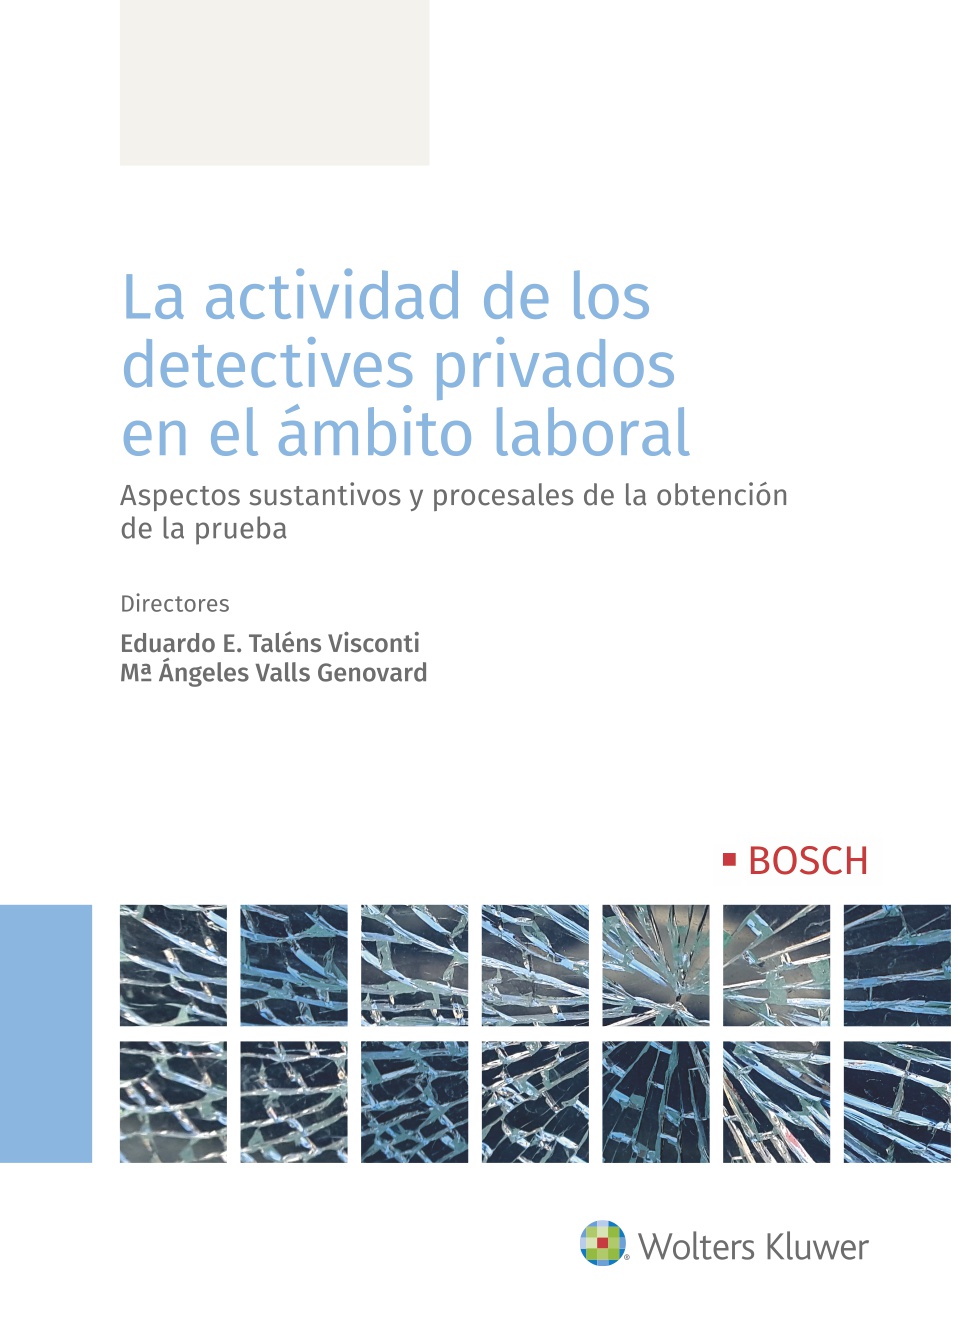 La actividad de los detectives privados en el ámbito laboral   «Aspectos sustantivos y procesales de la obtención de la prueba»